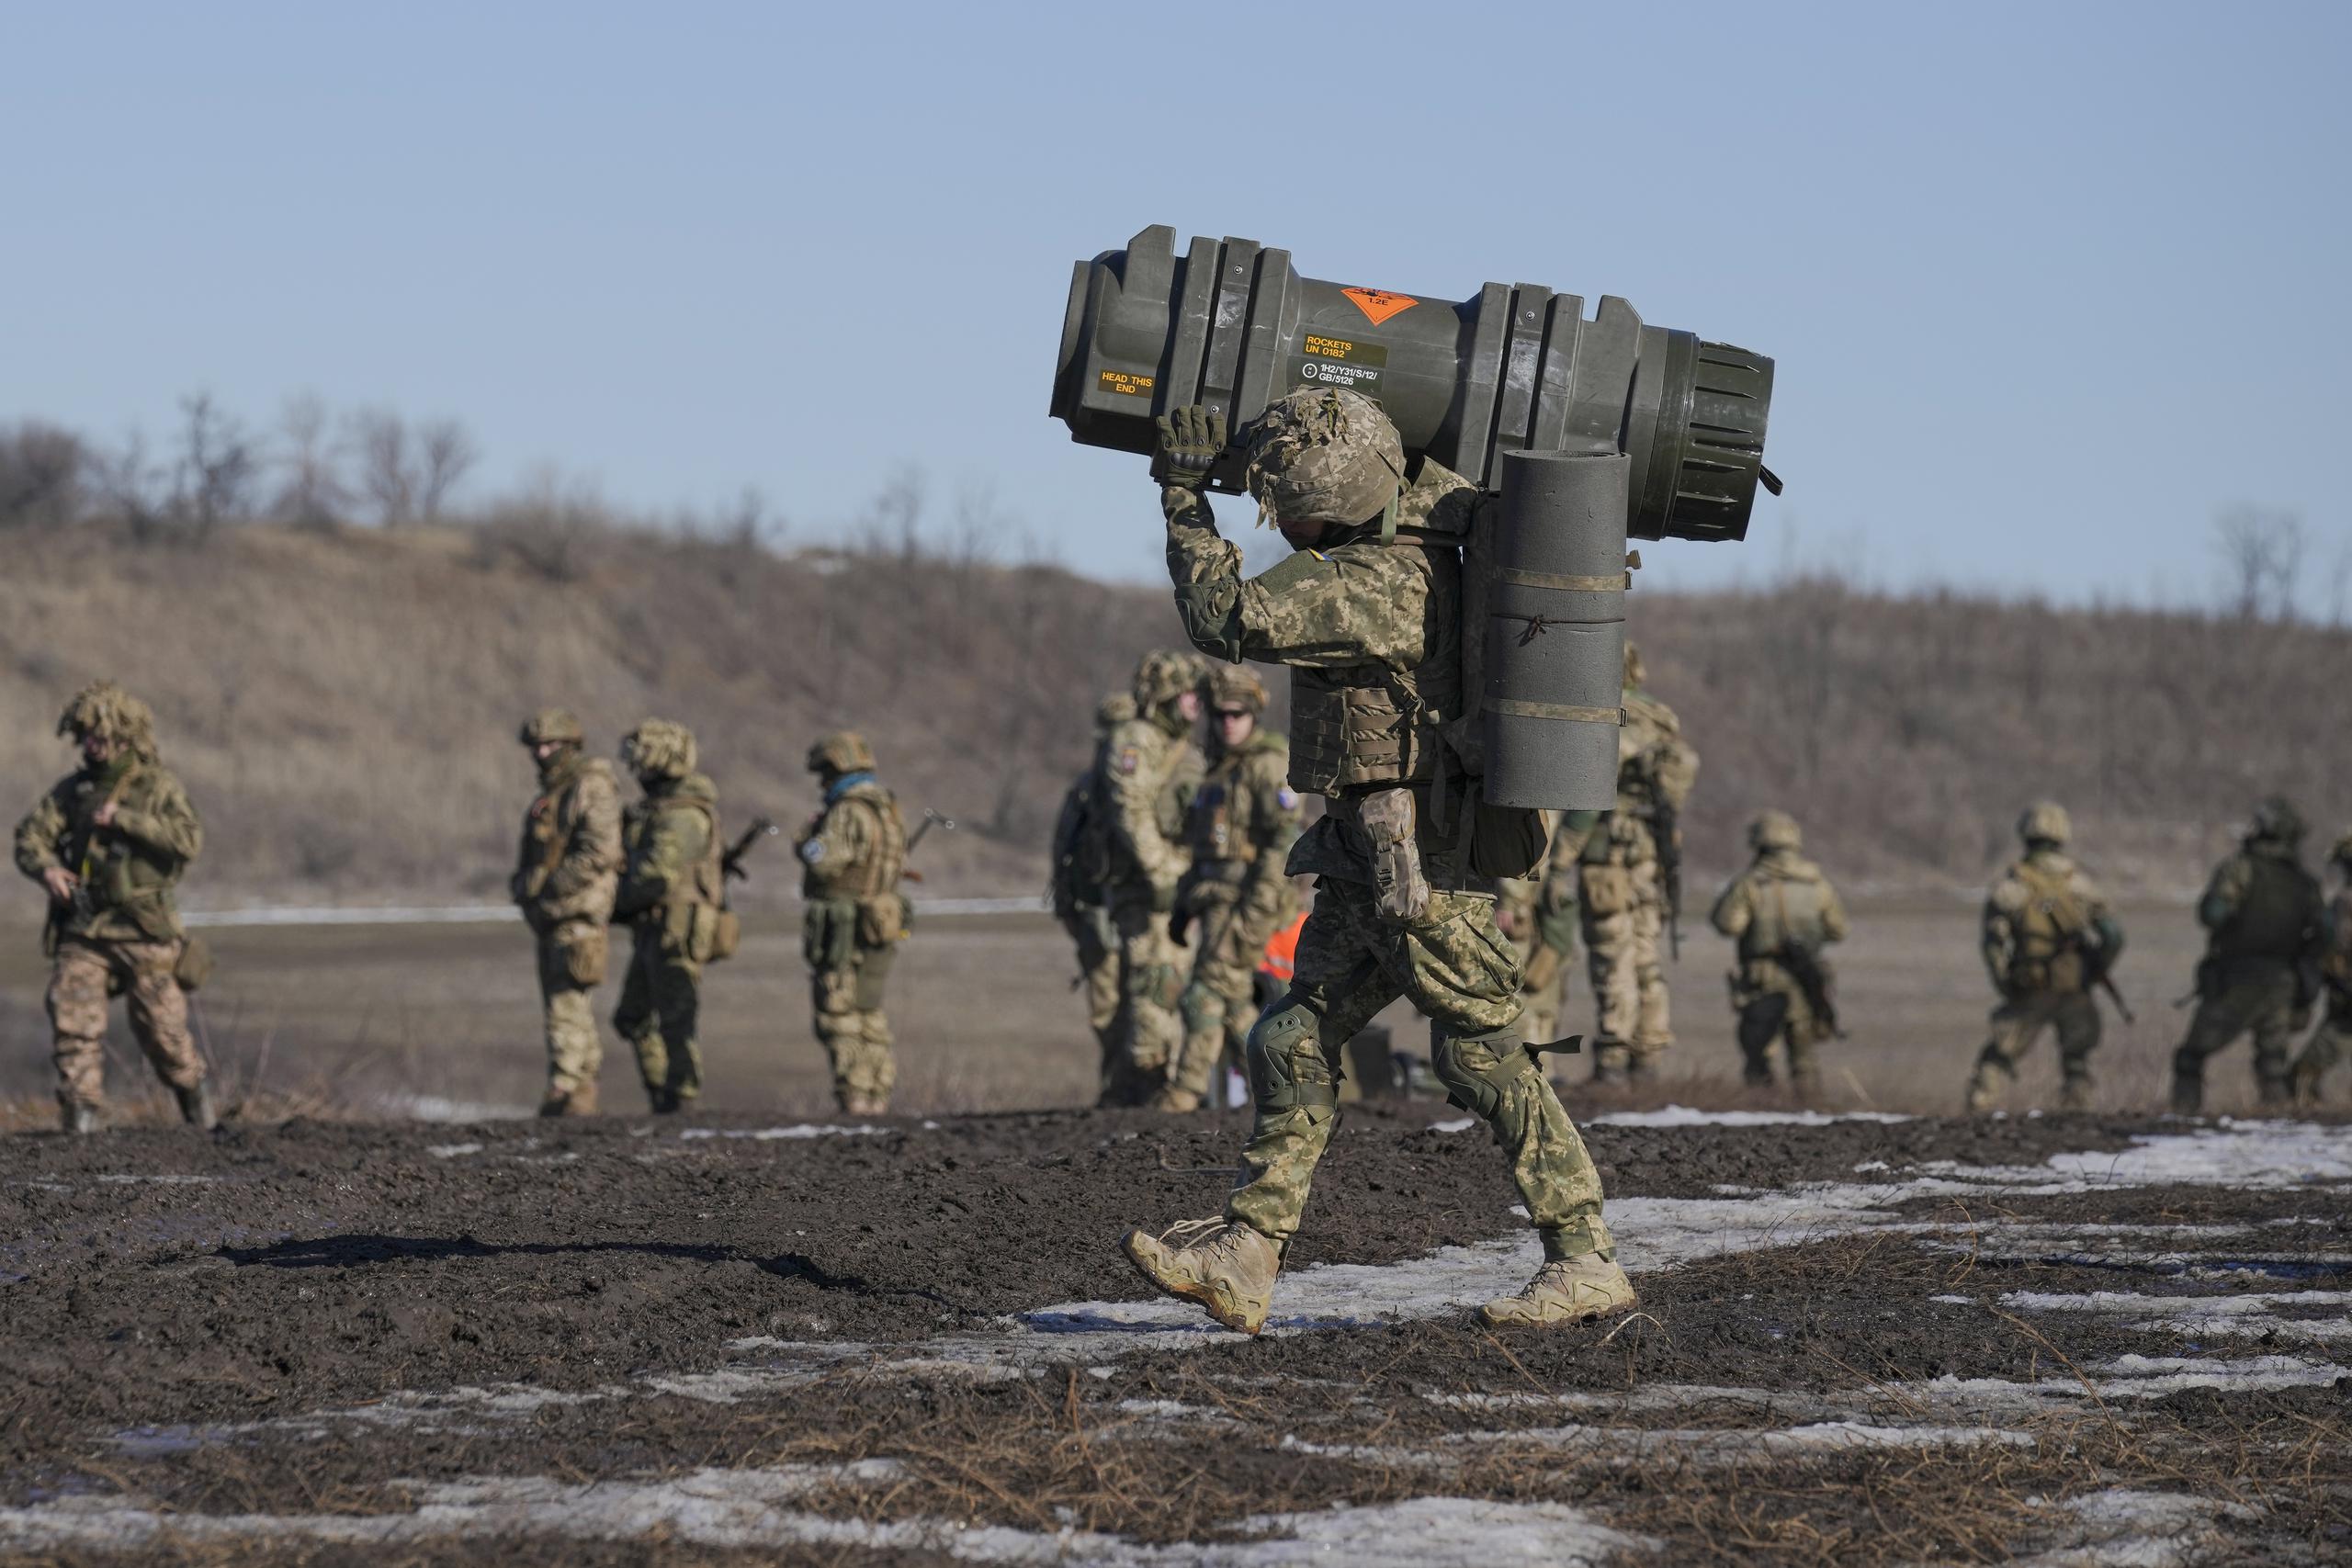 Un soldado ucraniano mueve un arma antitanque NLAW durante unas maniobras el 15 de febrero de 2022 en la región de Donetsk, en el este de Ucrania.